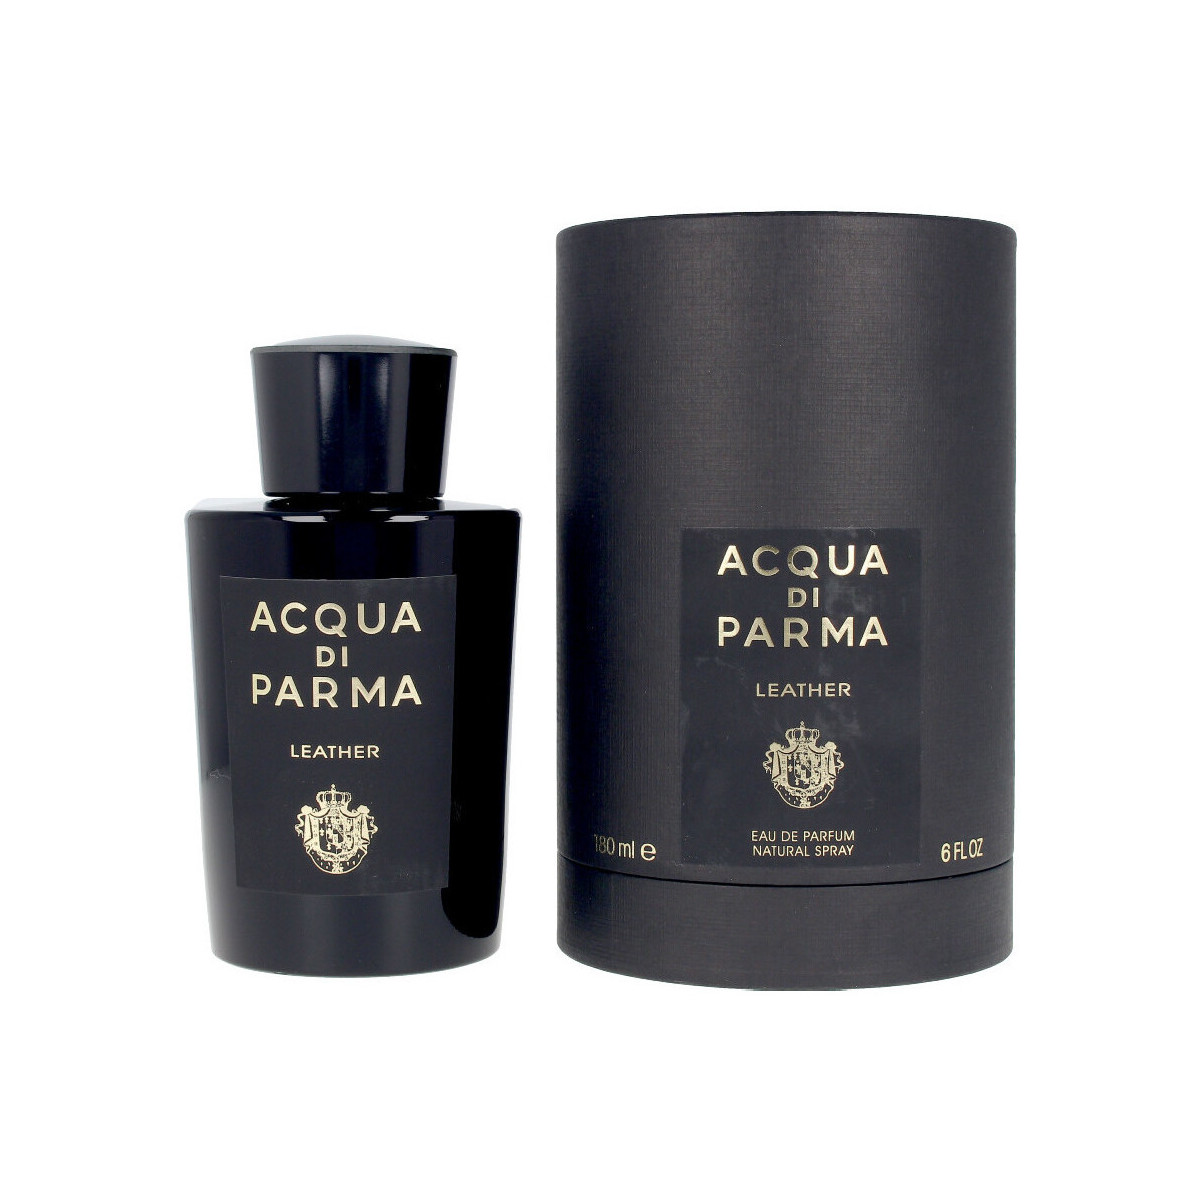 Beauty Eau de parfum  Acqua Di Parma Leather - Parfüm - 180ml - VERDAMPFER Leather - perfume - 180ml - spray